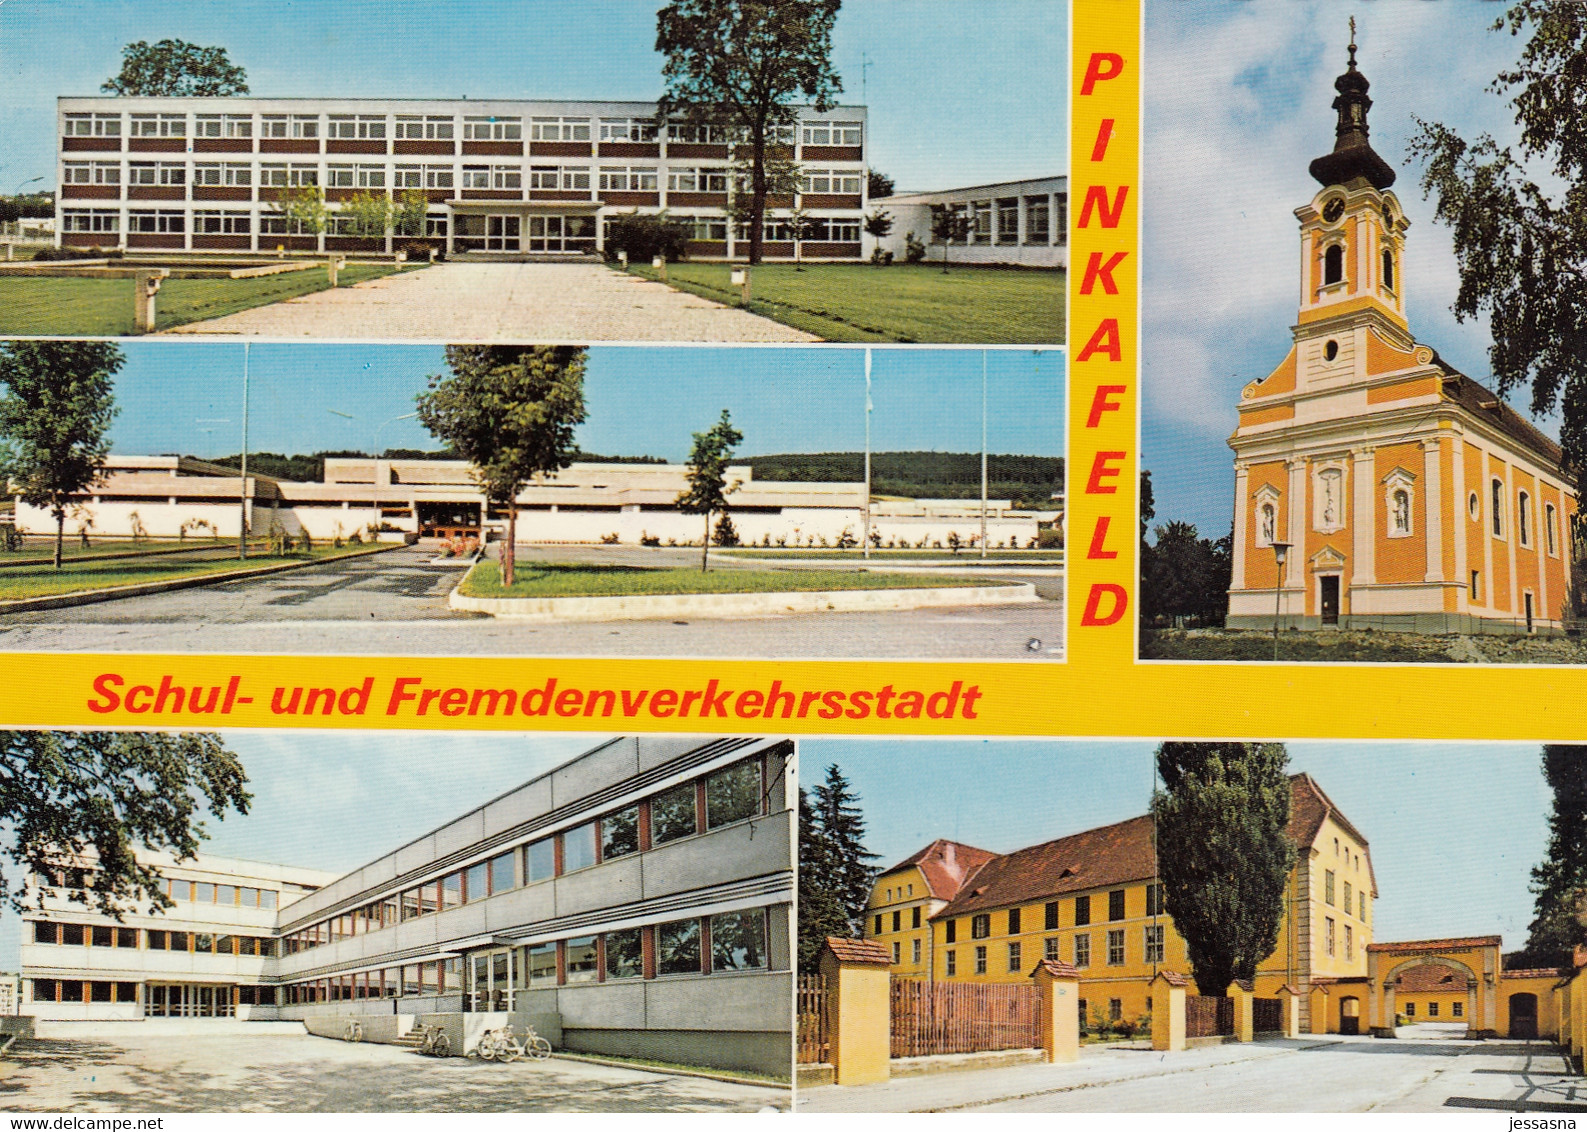 AK - Burgenland - Pinkafeld - Mehrbild Mit Schulen - 1970 - Pinkafeld